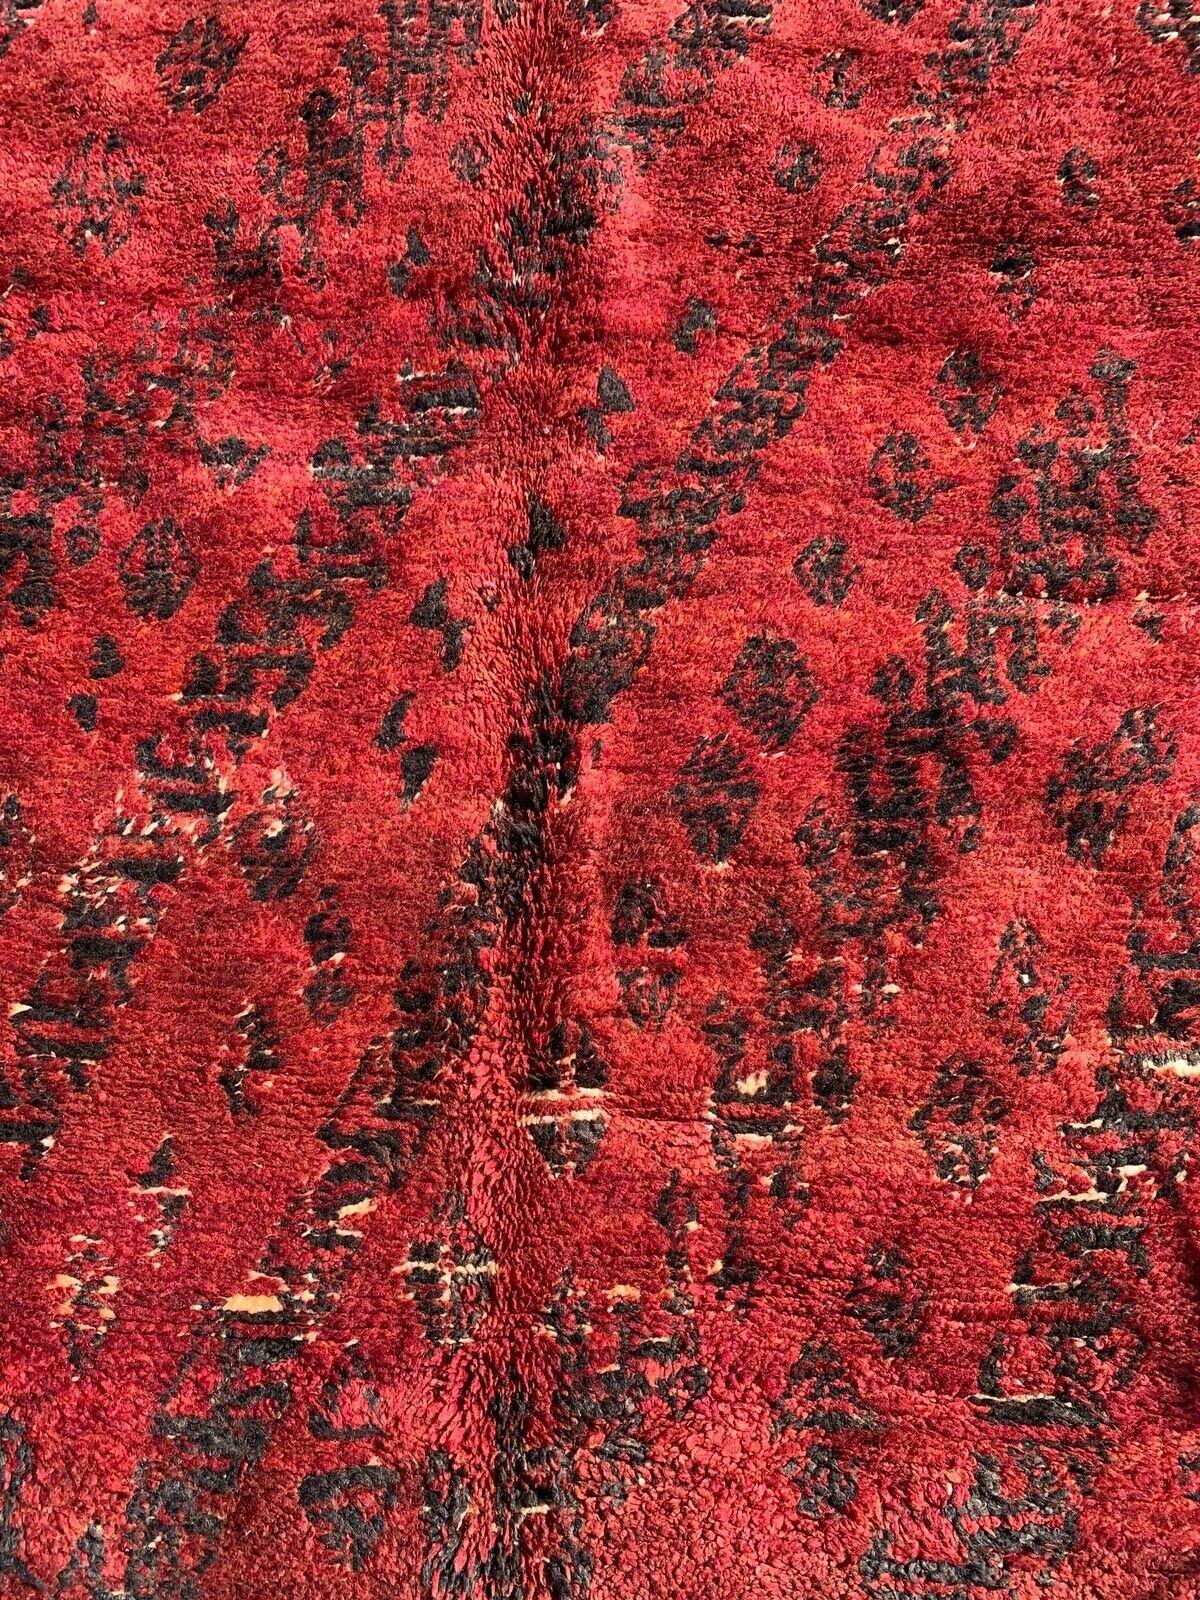 Voici notre tapis berbère rouge marocain vintage fait main, une pièce intemporelle qui incarne la beauté de l'artisanat marocain.

Spécifications :

Taille : 6.5' x 10.8'
Époque : années 1980
Condit : Bon
MATERIAL : Laine
Description :
Ce tapis